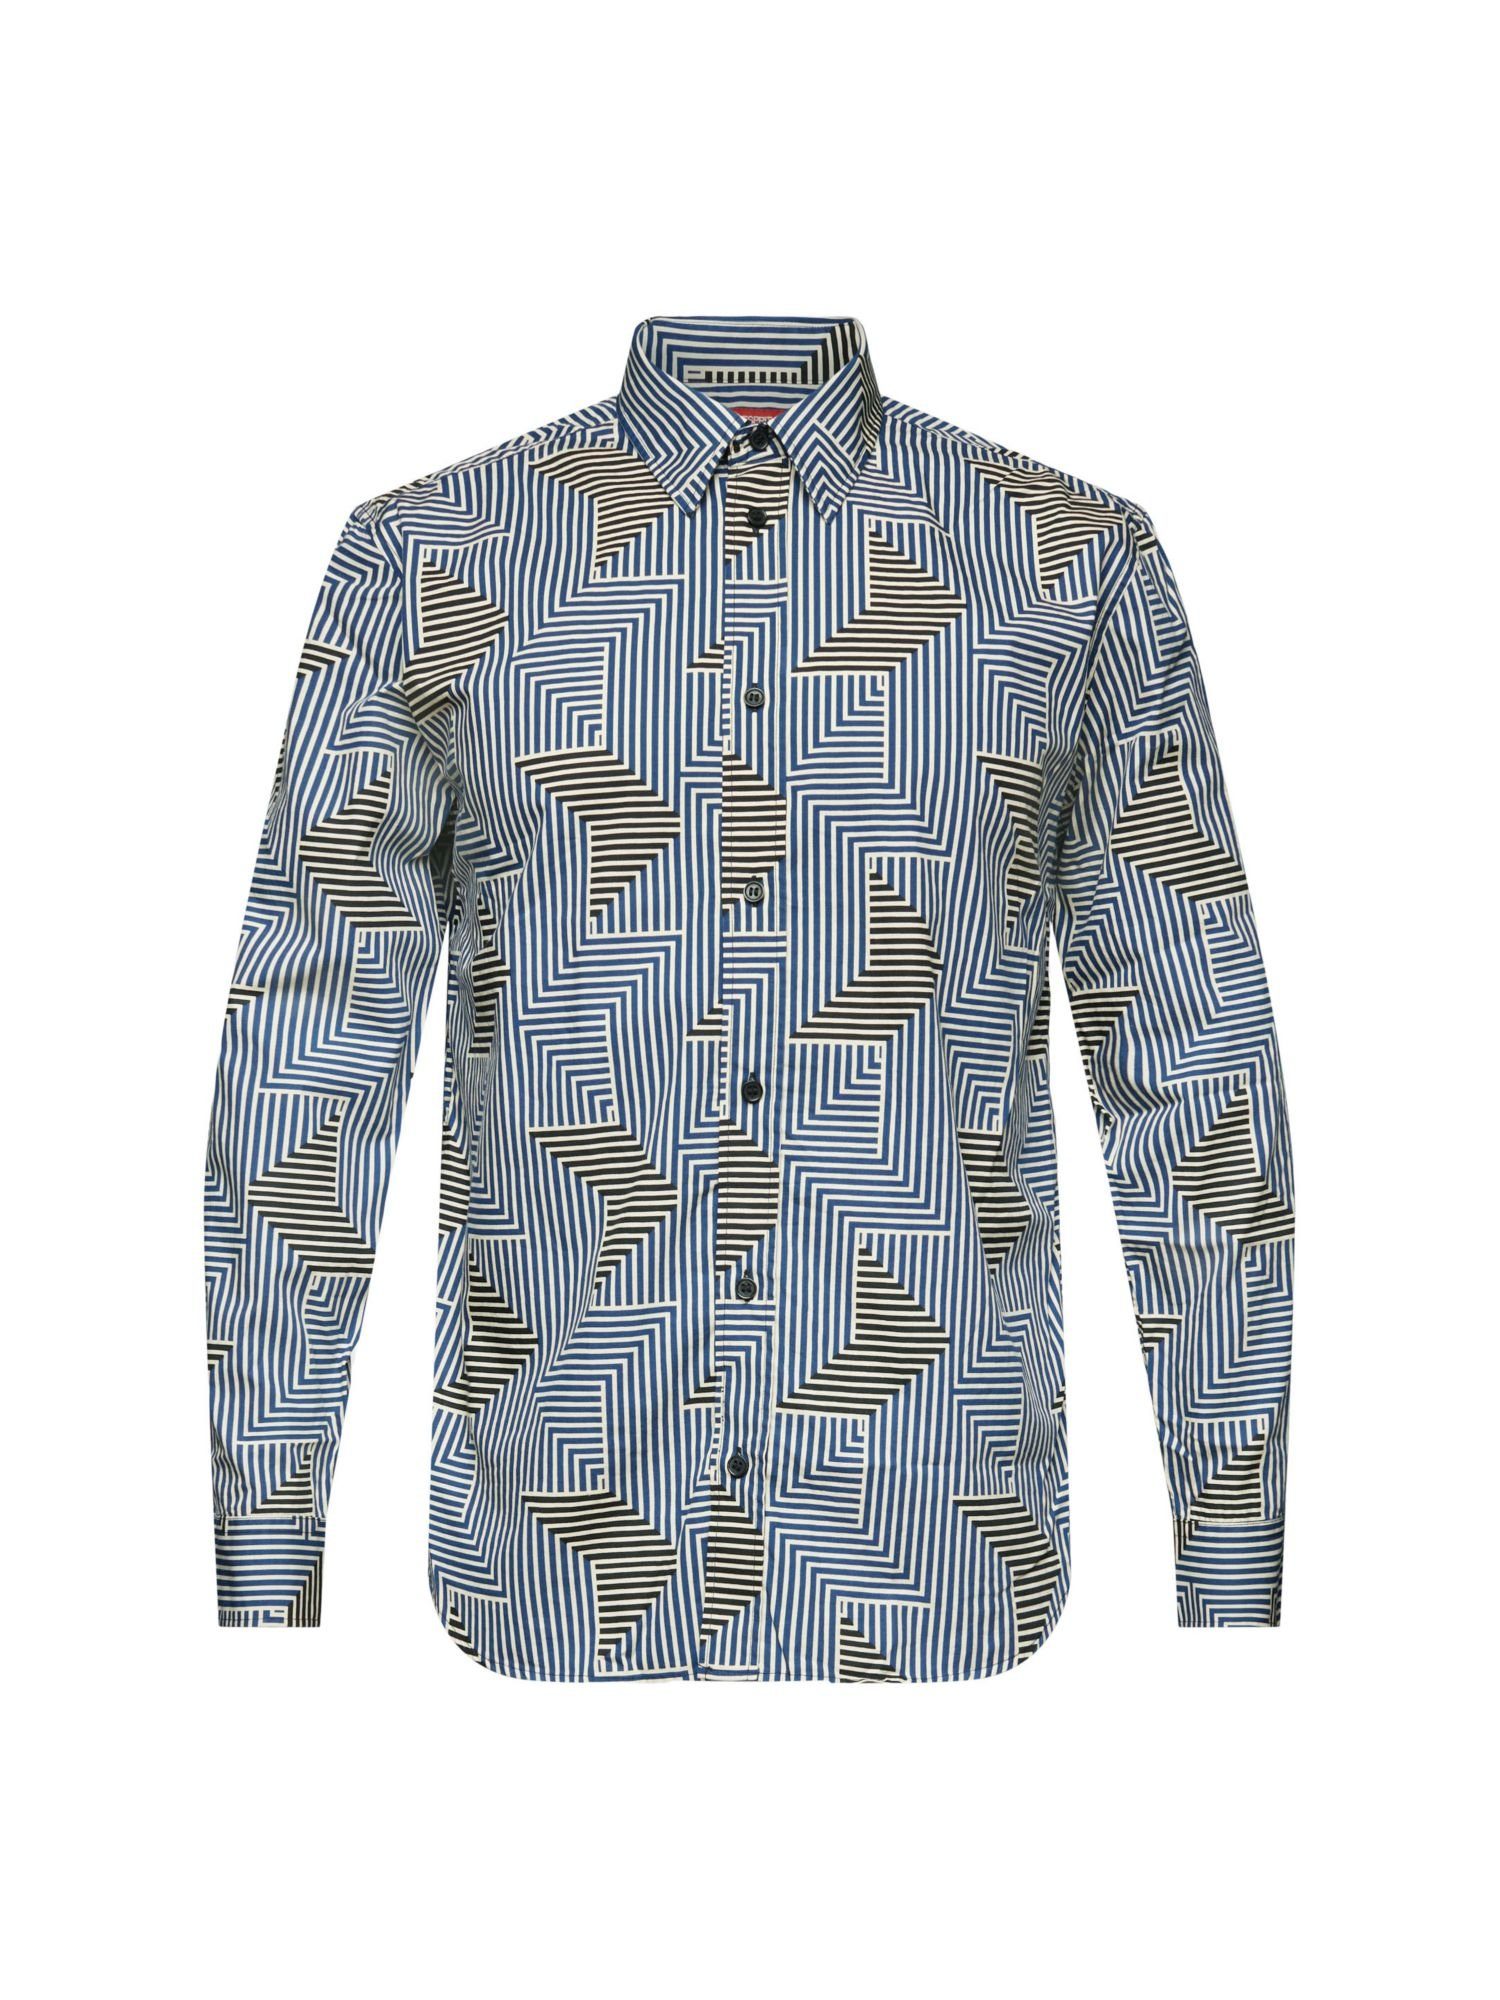 Esprit Langarmhemd Hemd in normaler Passform mit geometrischem Print BRIGHT BLUE | Hemden